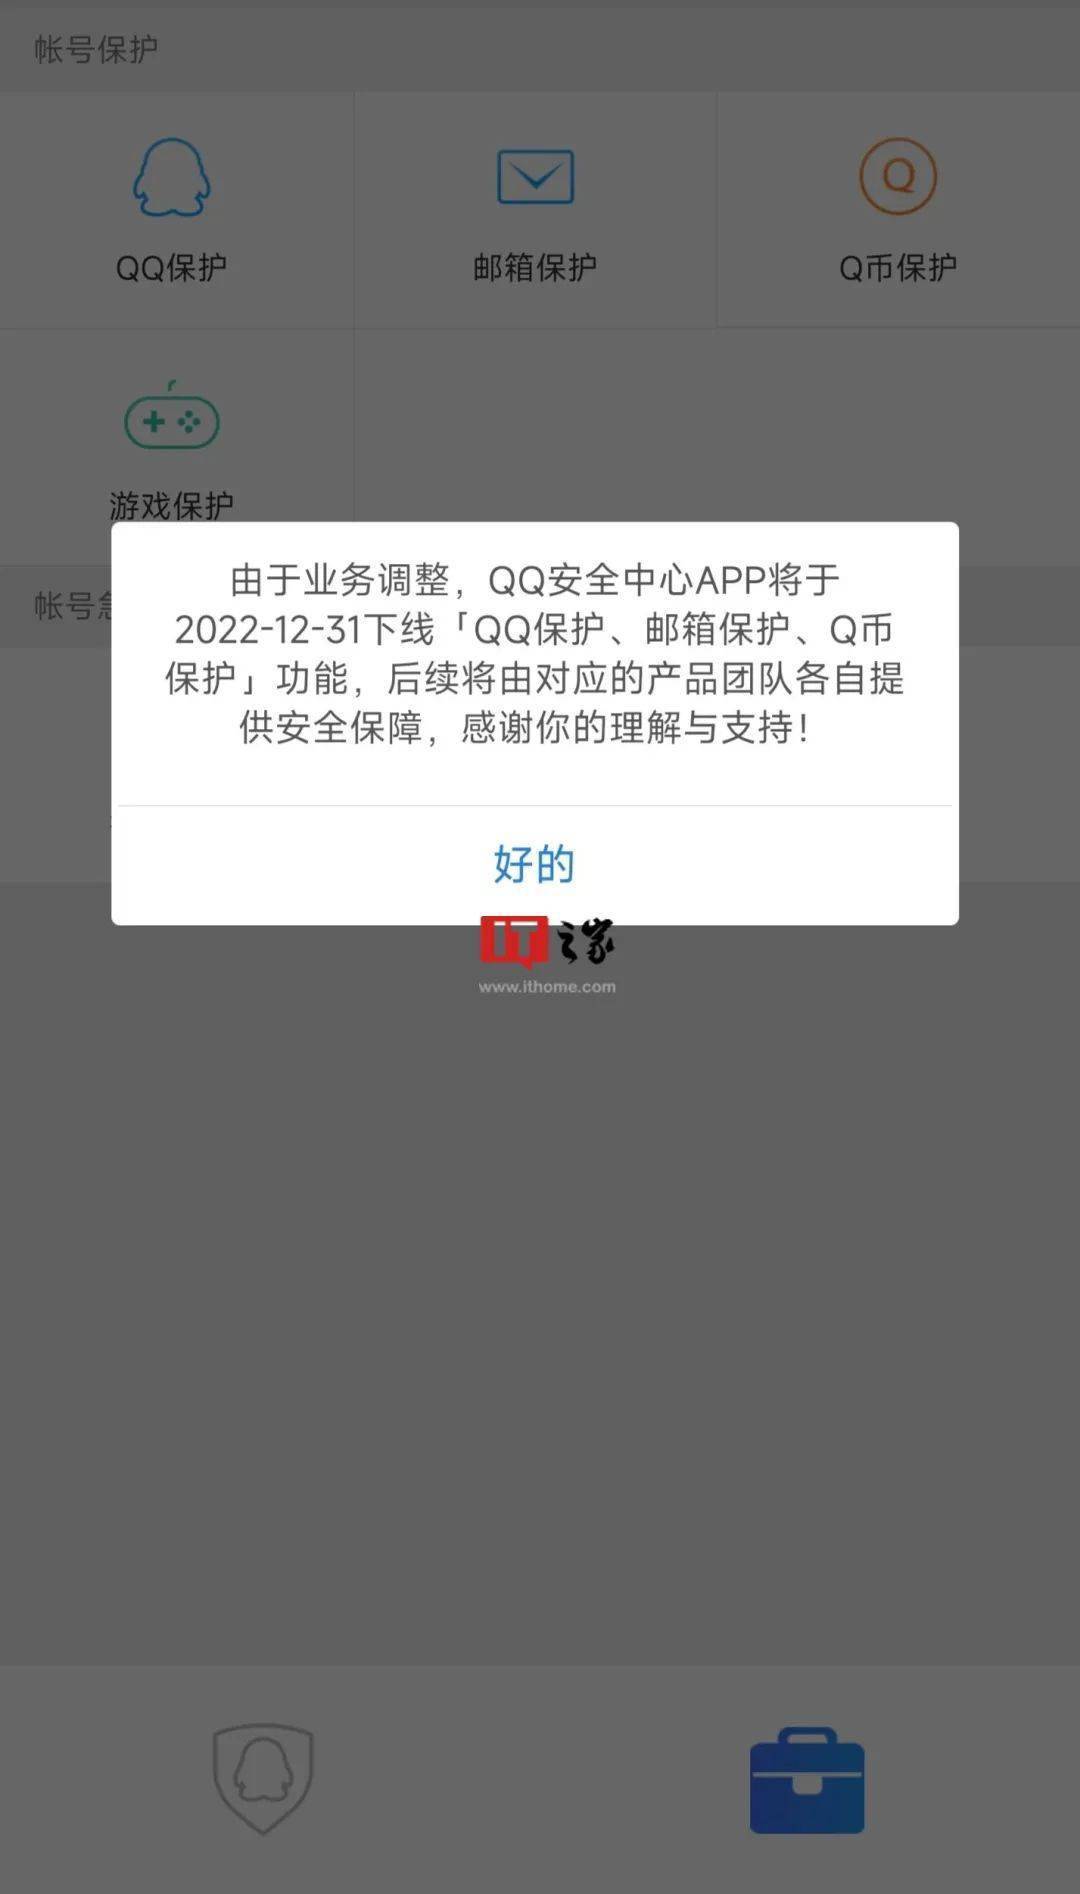 qq邮箱华为手机登陆:别啊！腾讯QQ安全中心App将下线「QQ保护、邮箱保护、Q币保护」功能